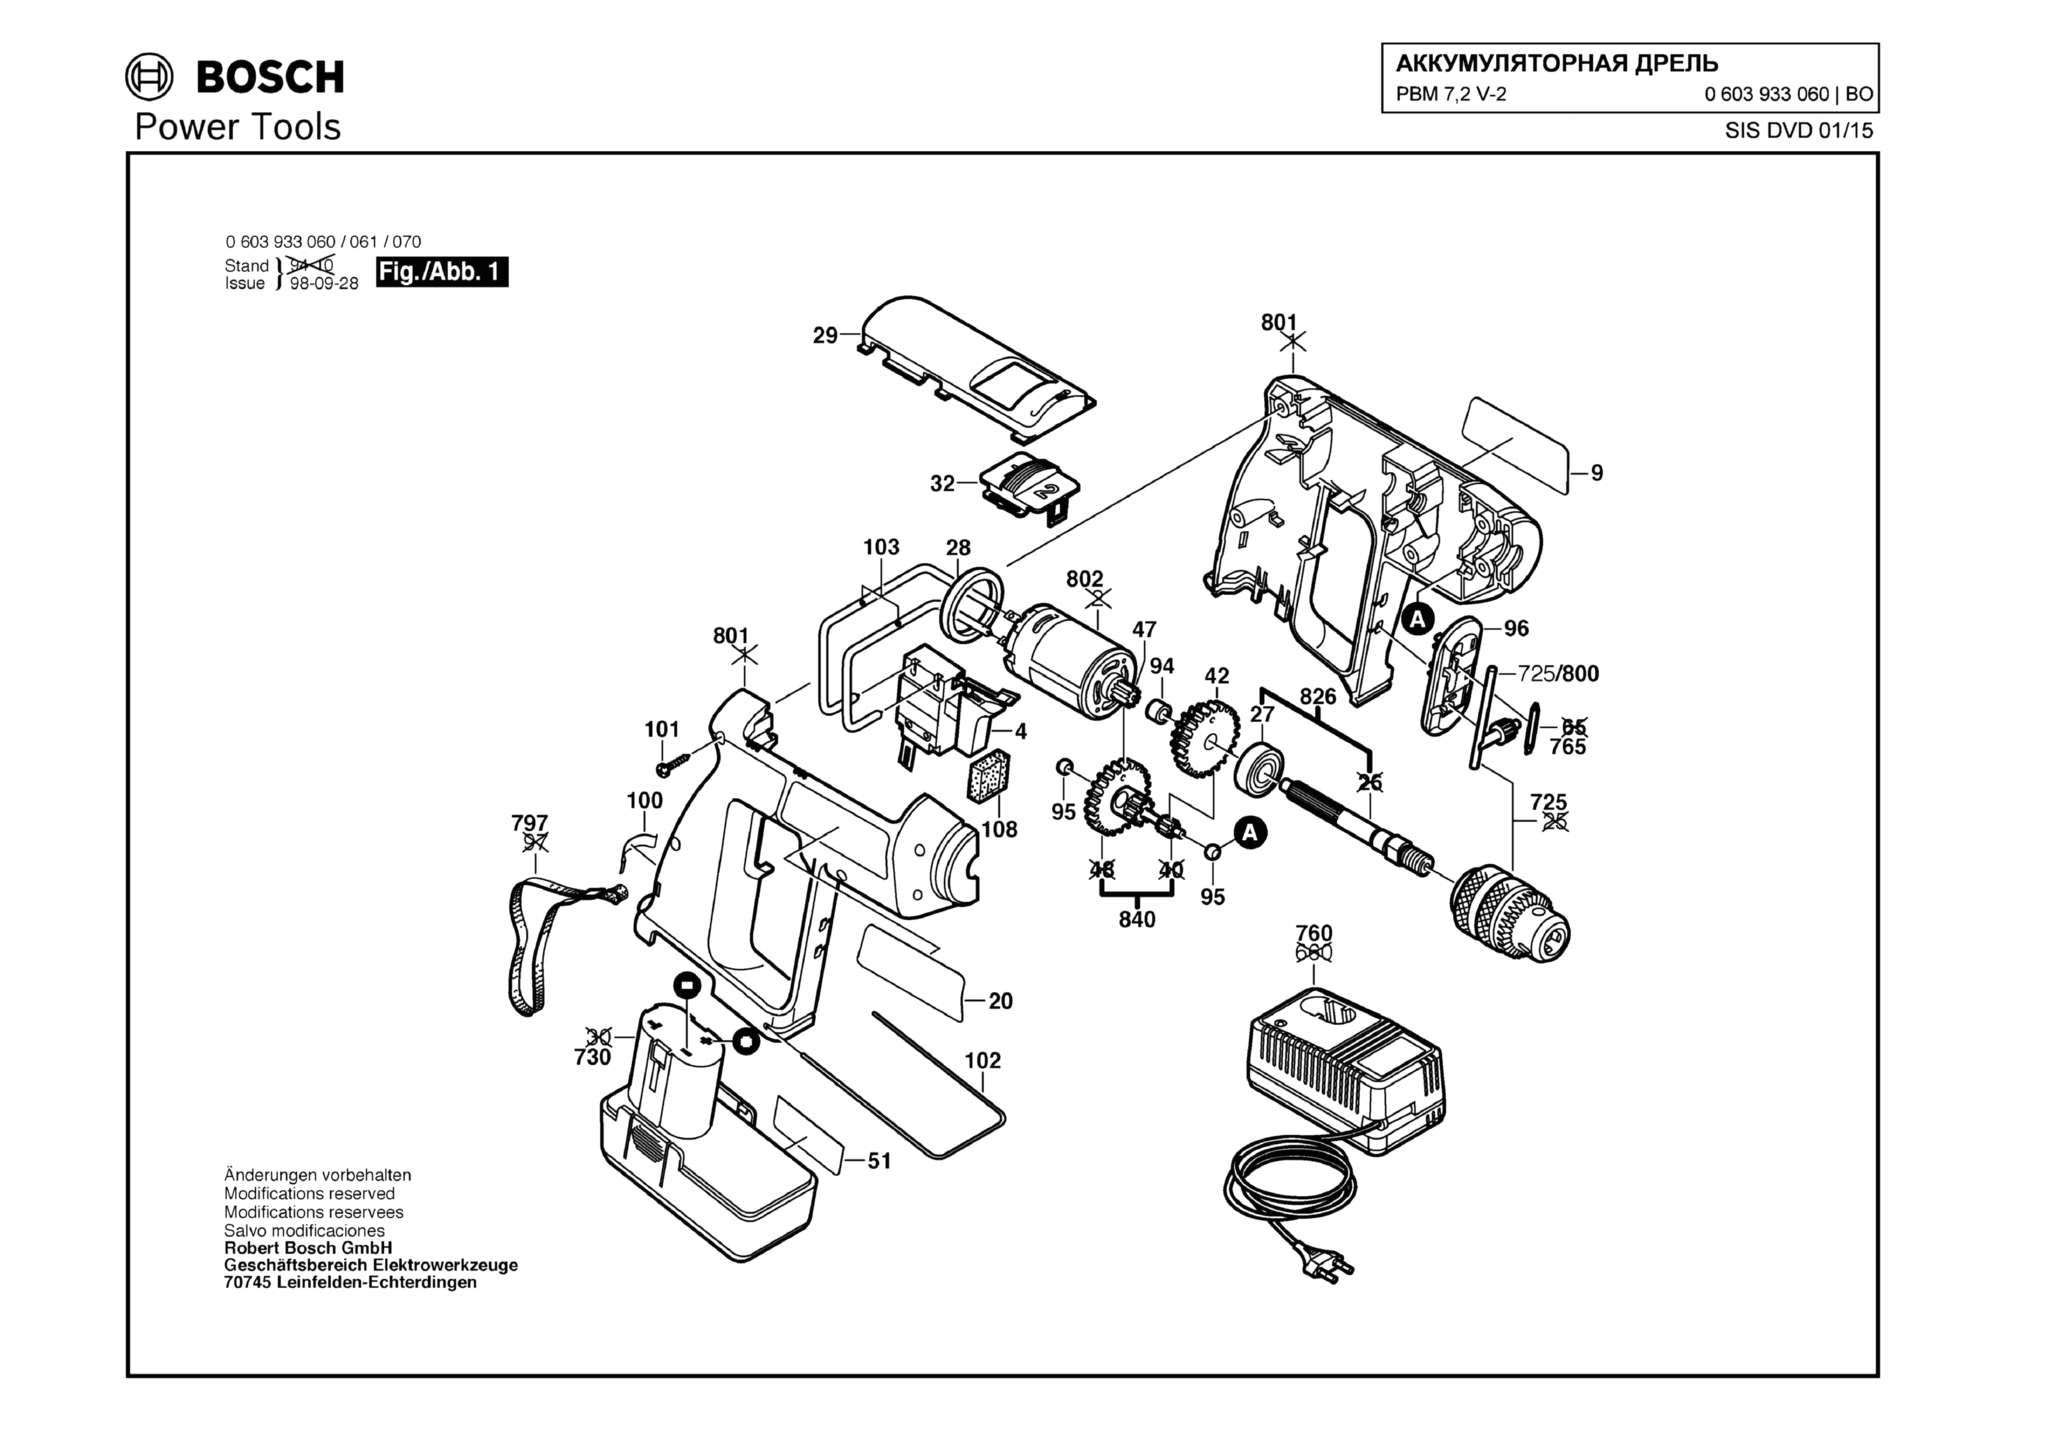 Запчасти, схема и деталировка Bosch PBM 7,2 V-2 (ТИП 0603933060)